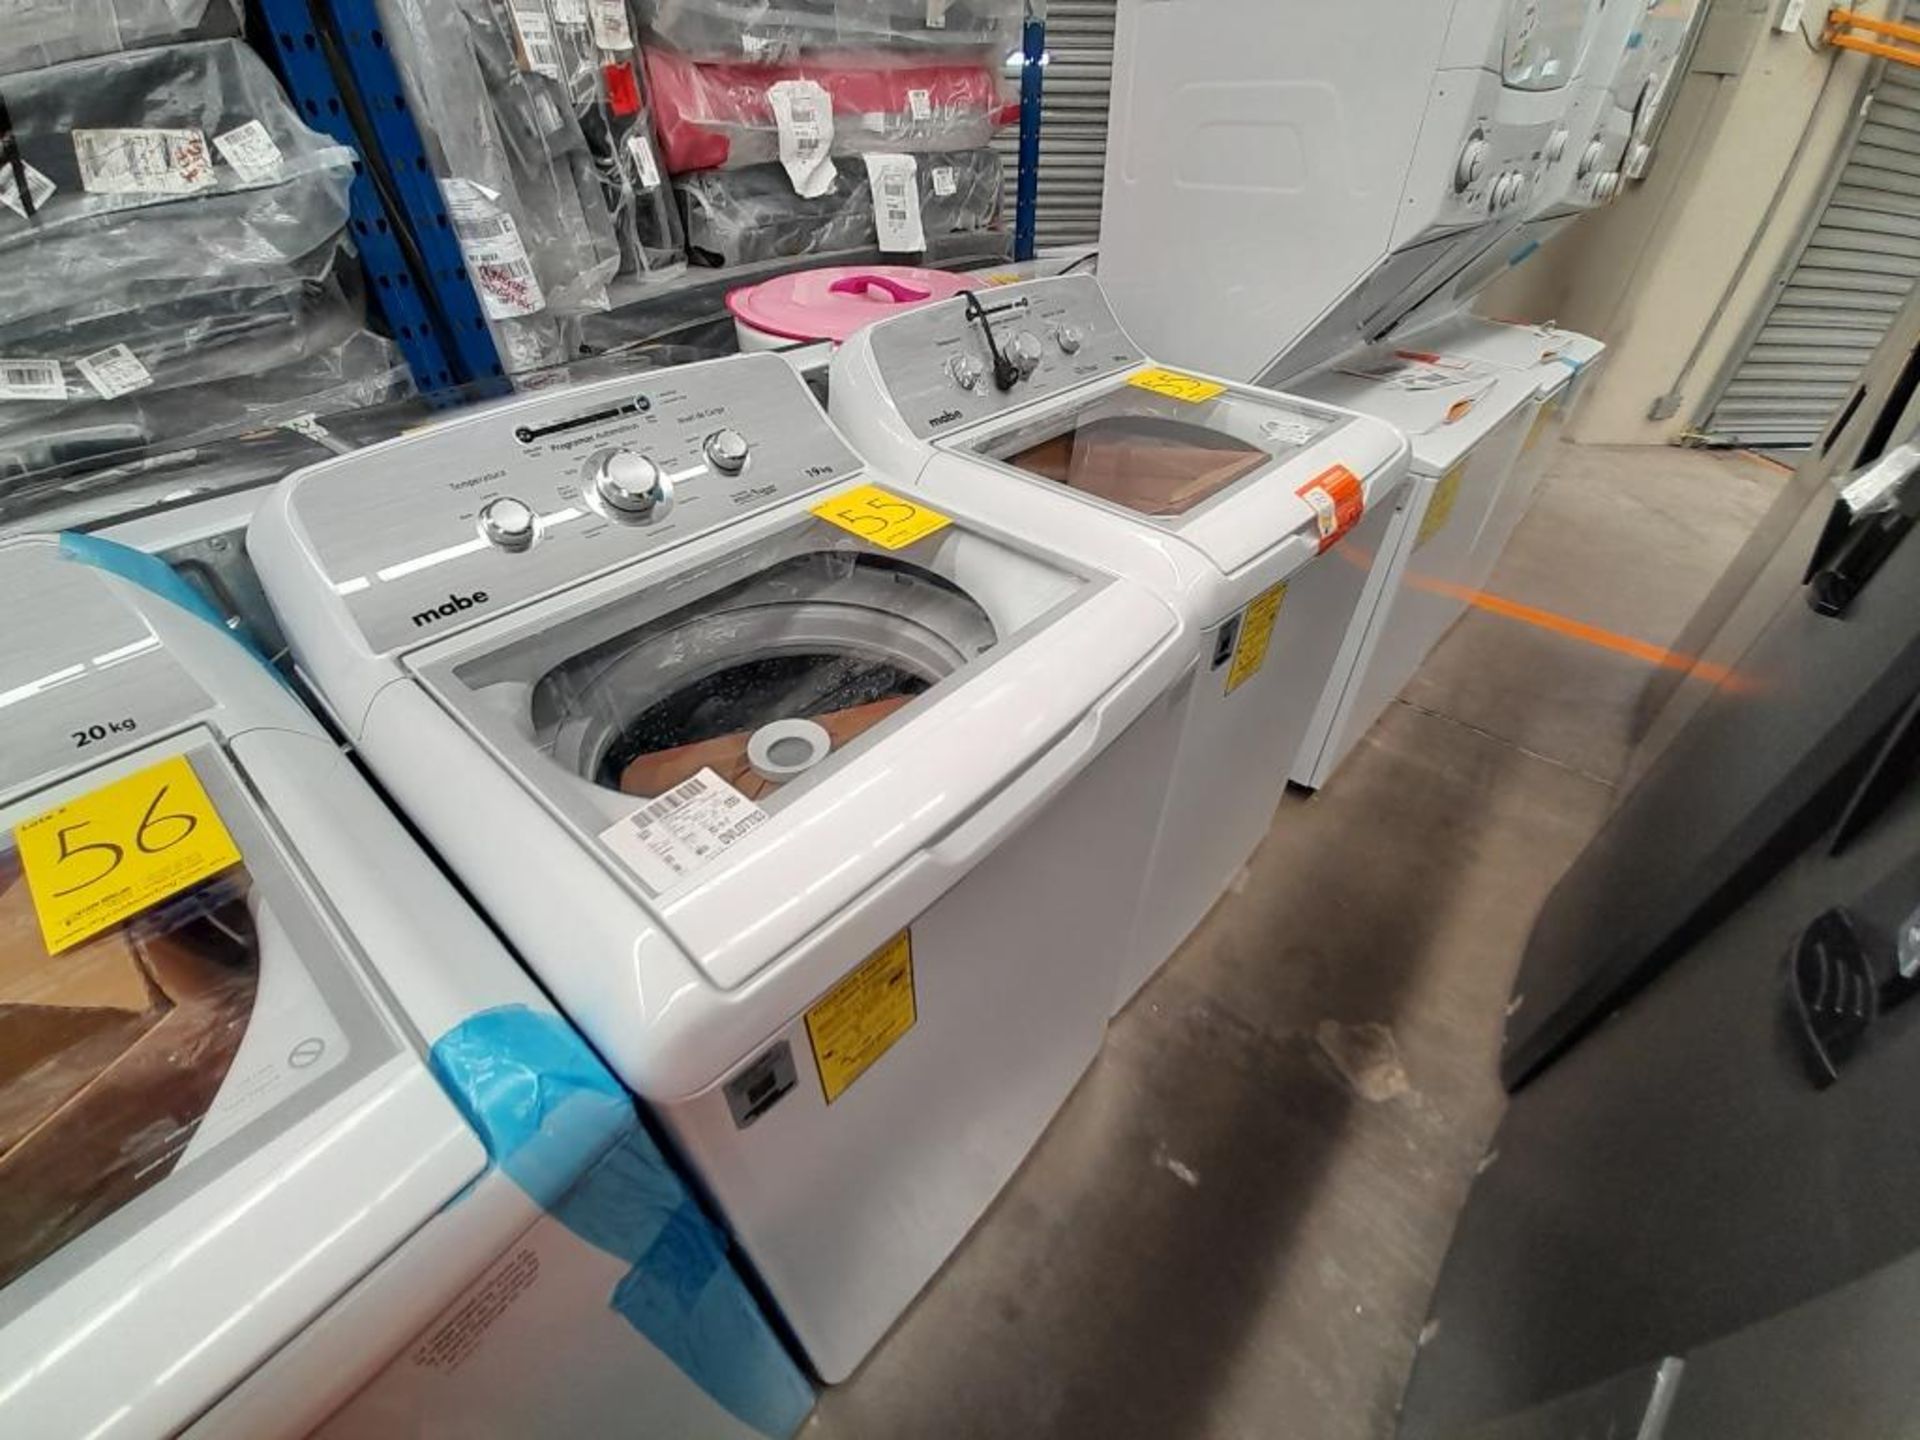 Lote de 2 lavadoras contiene: 1 lavadora de 19 KG Marca MABE, Modelo LMA79113VBAB03, Serie S86362, - Image 2 of 6